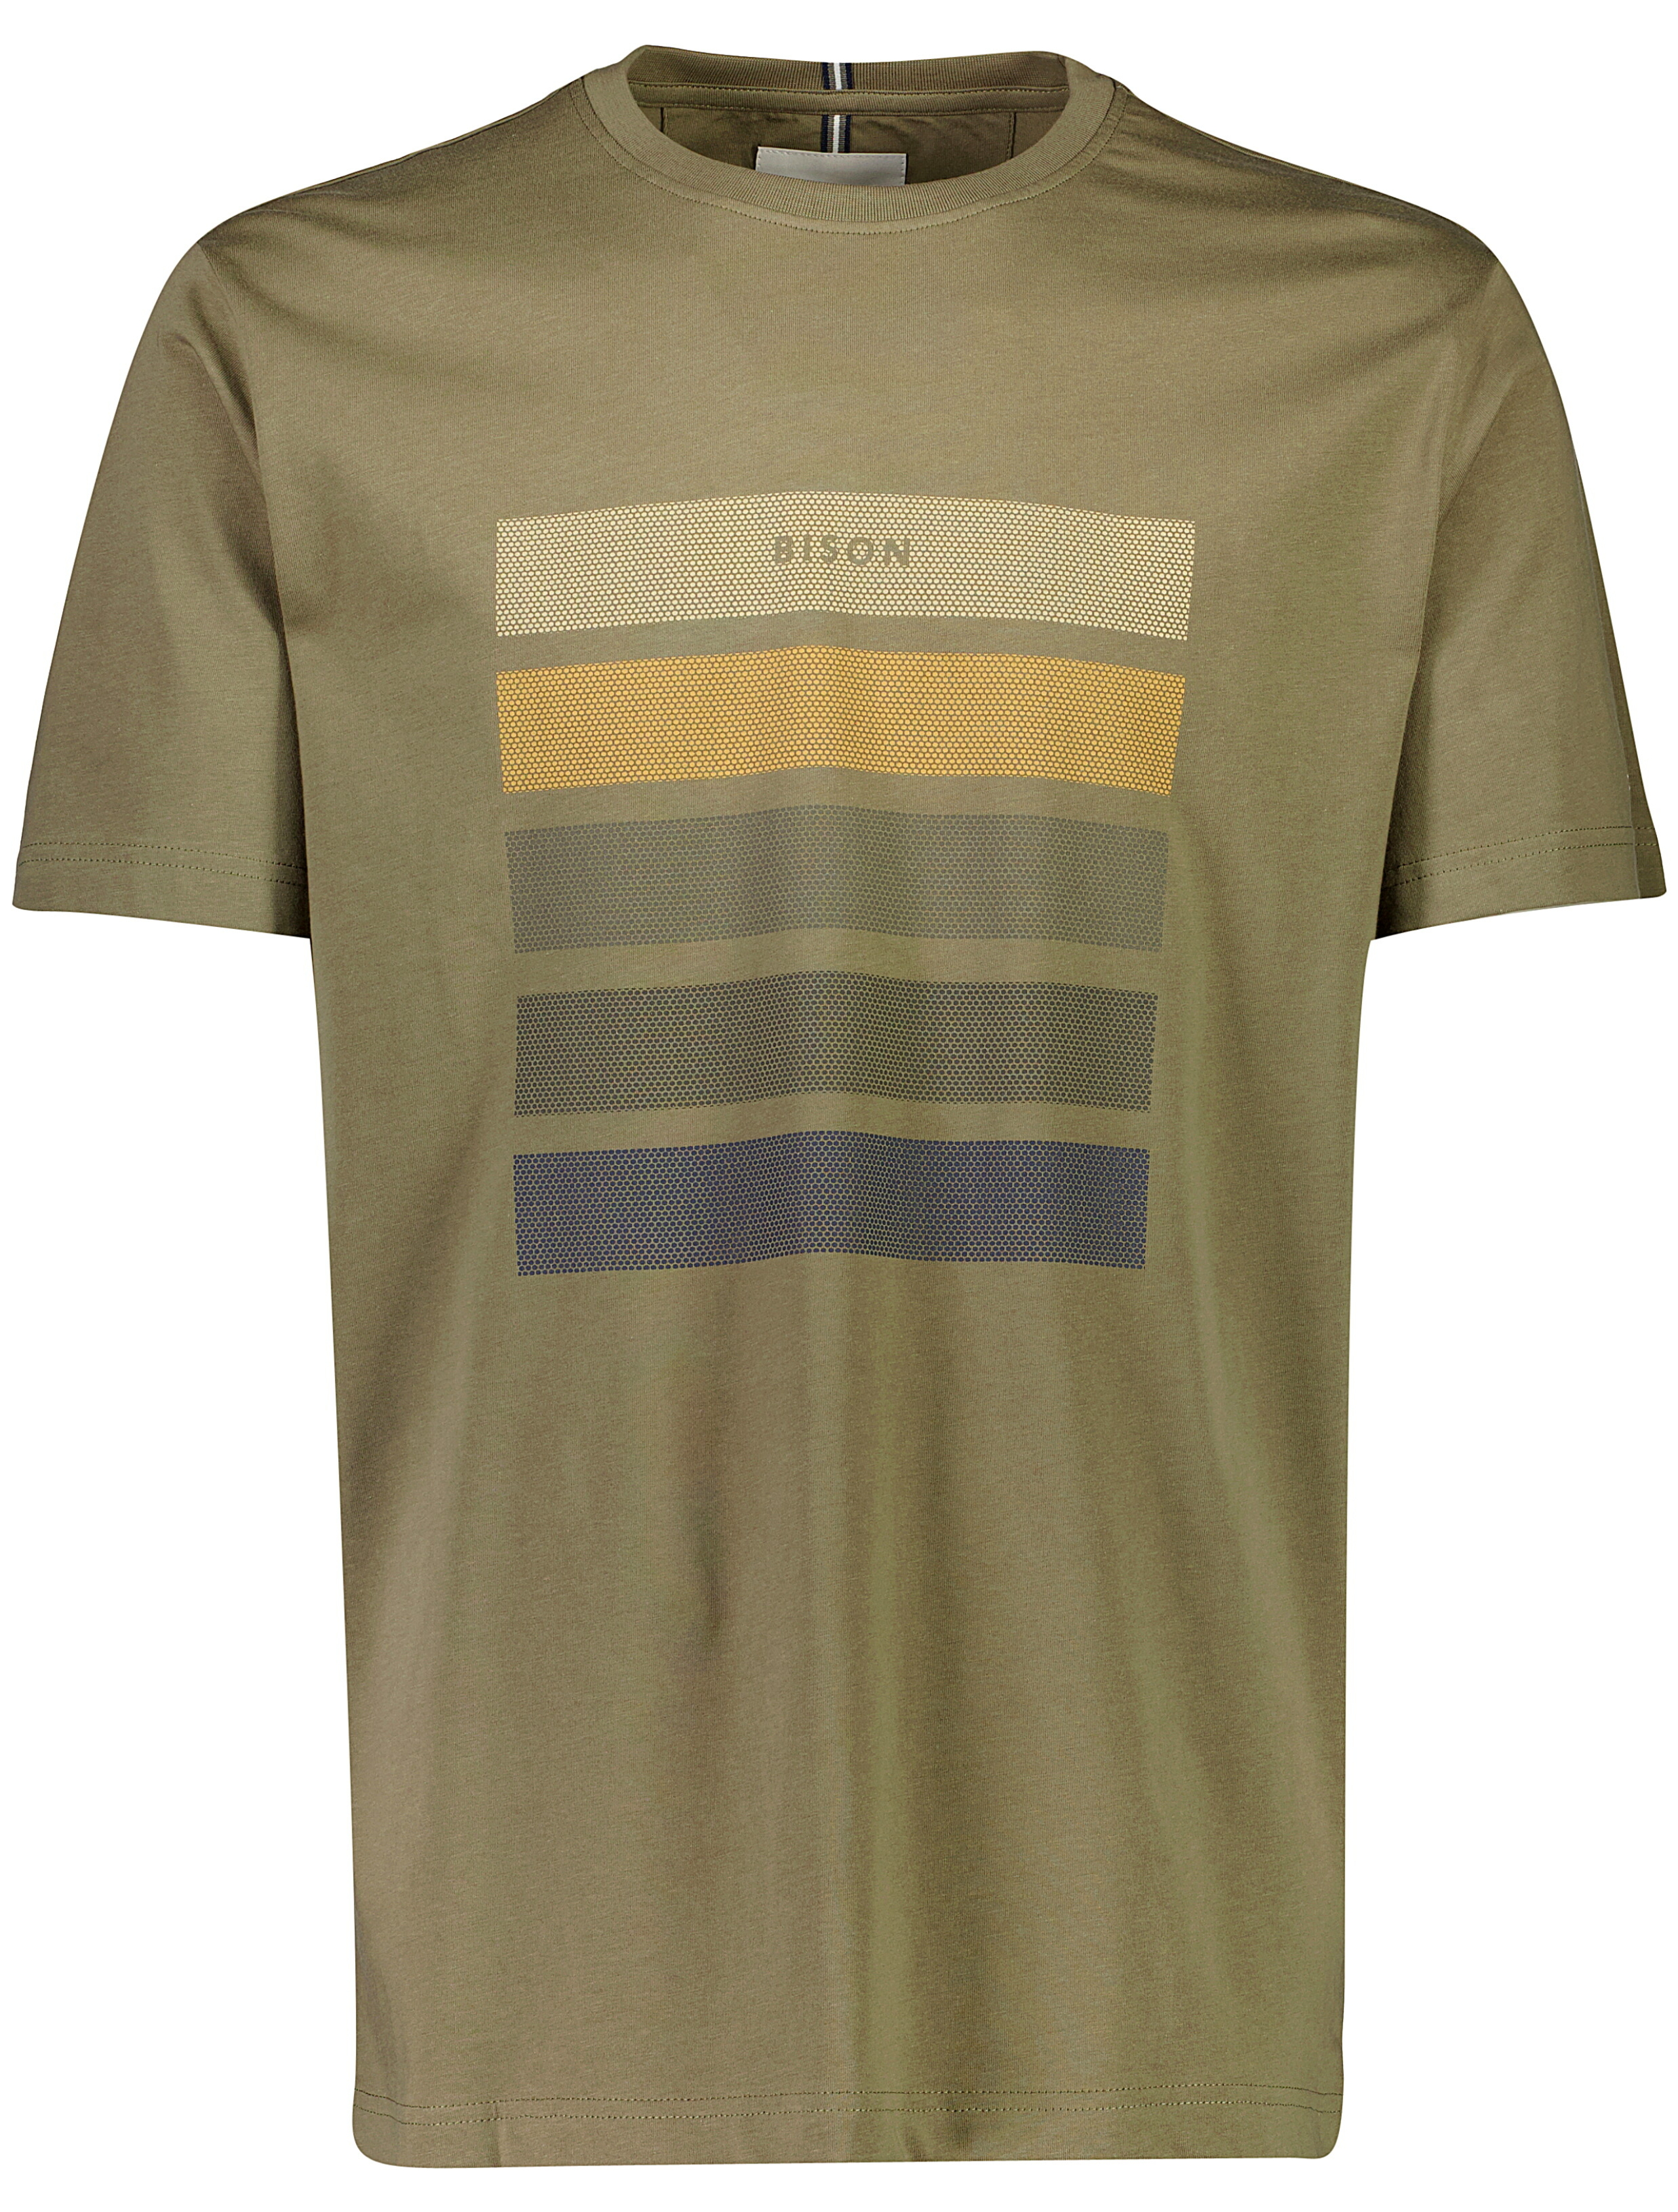 Bison T-shirt grön / army